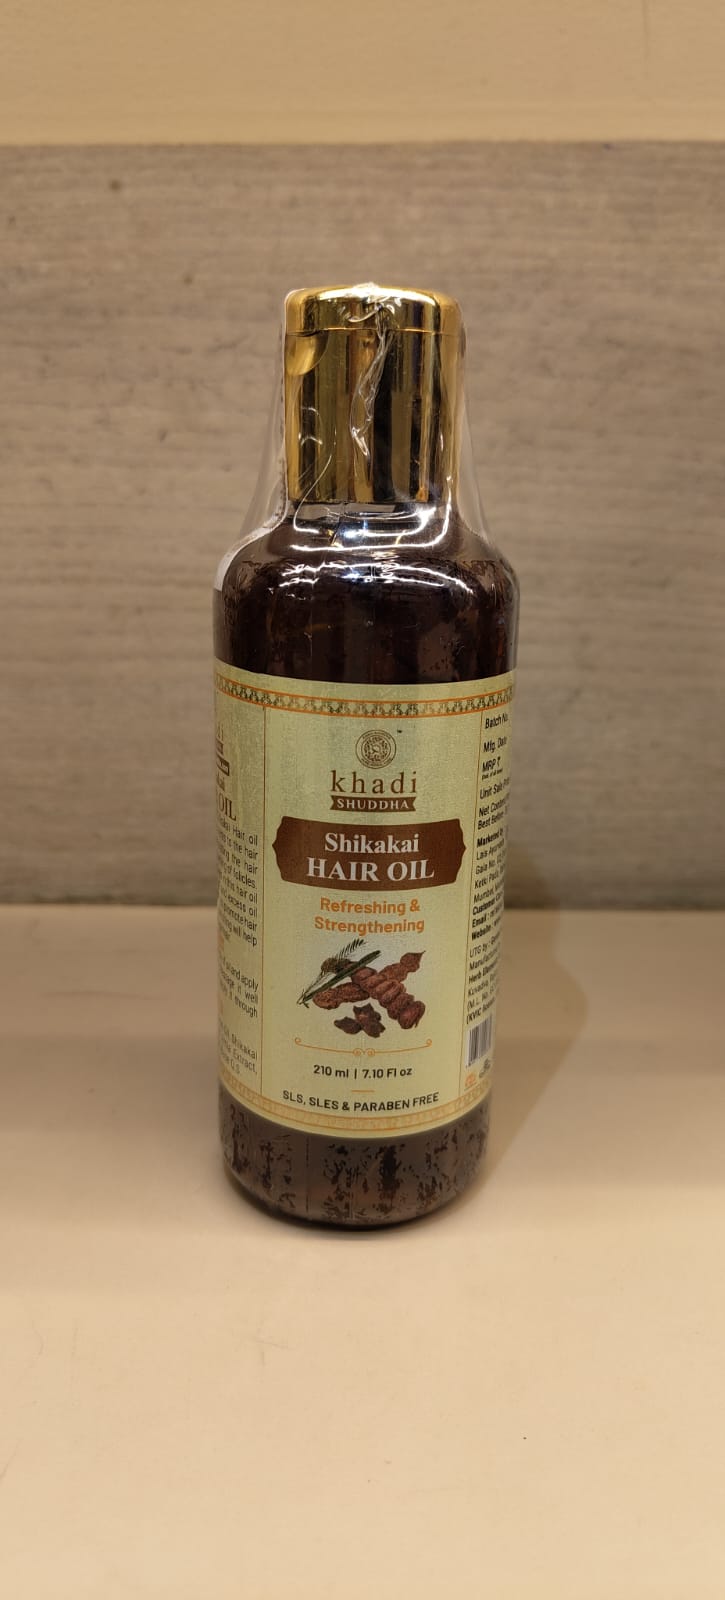 Khadi Shuddha Shikakai Hair Oil